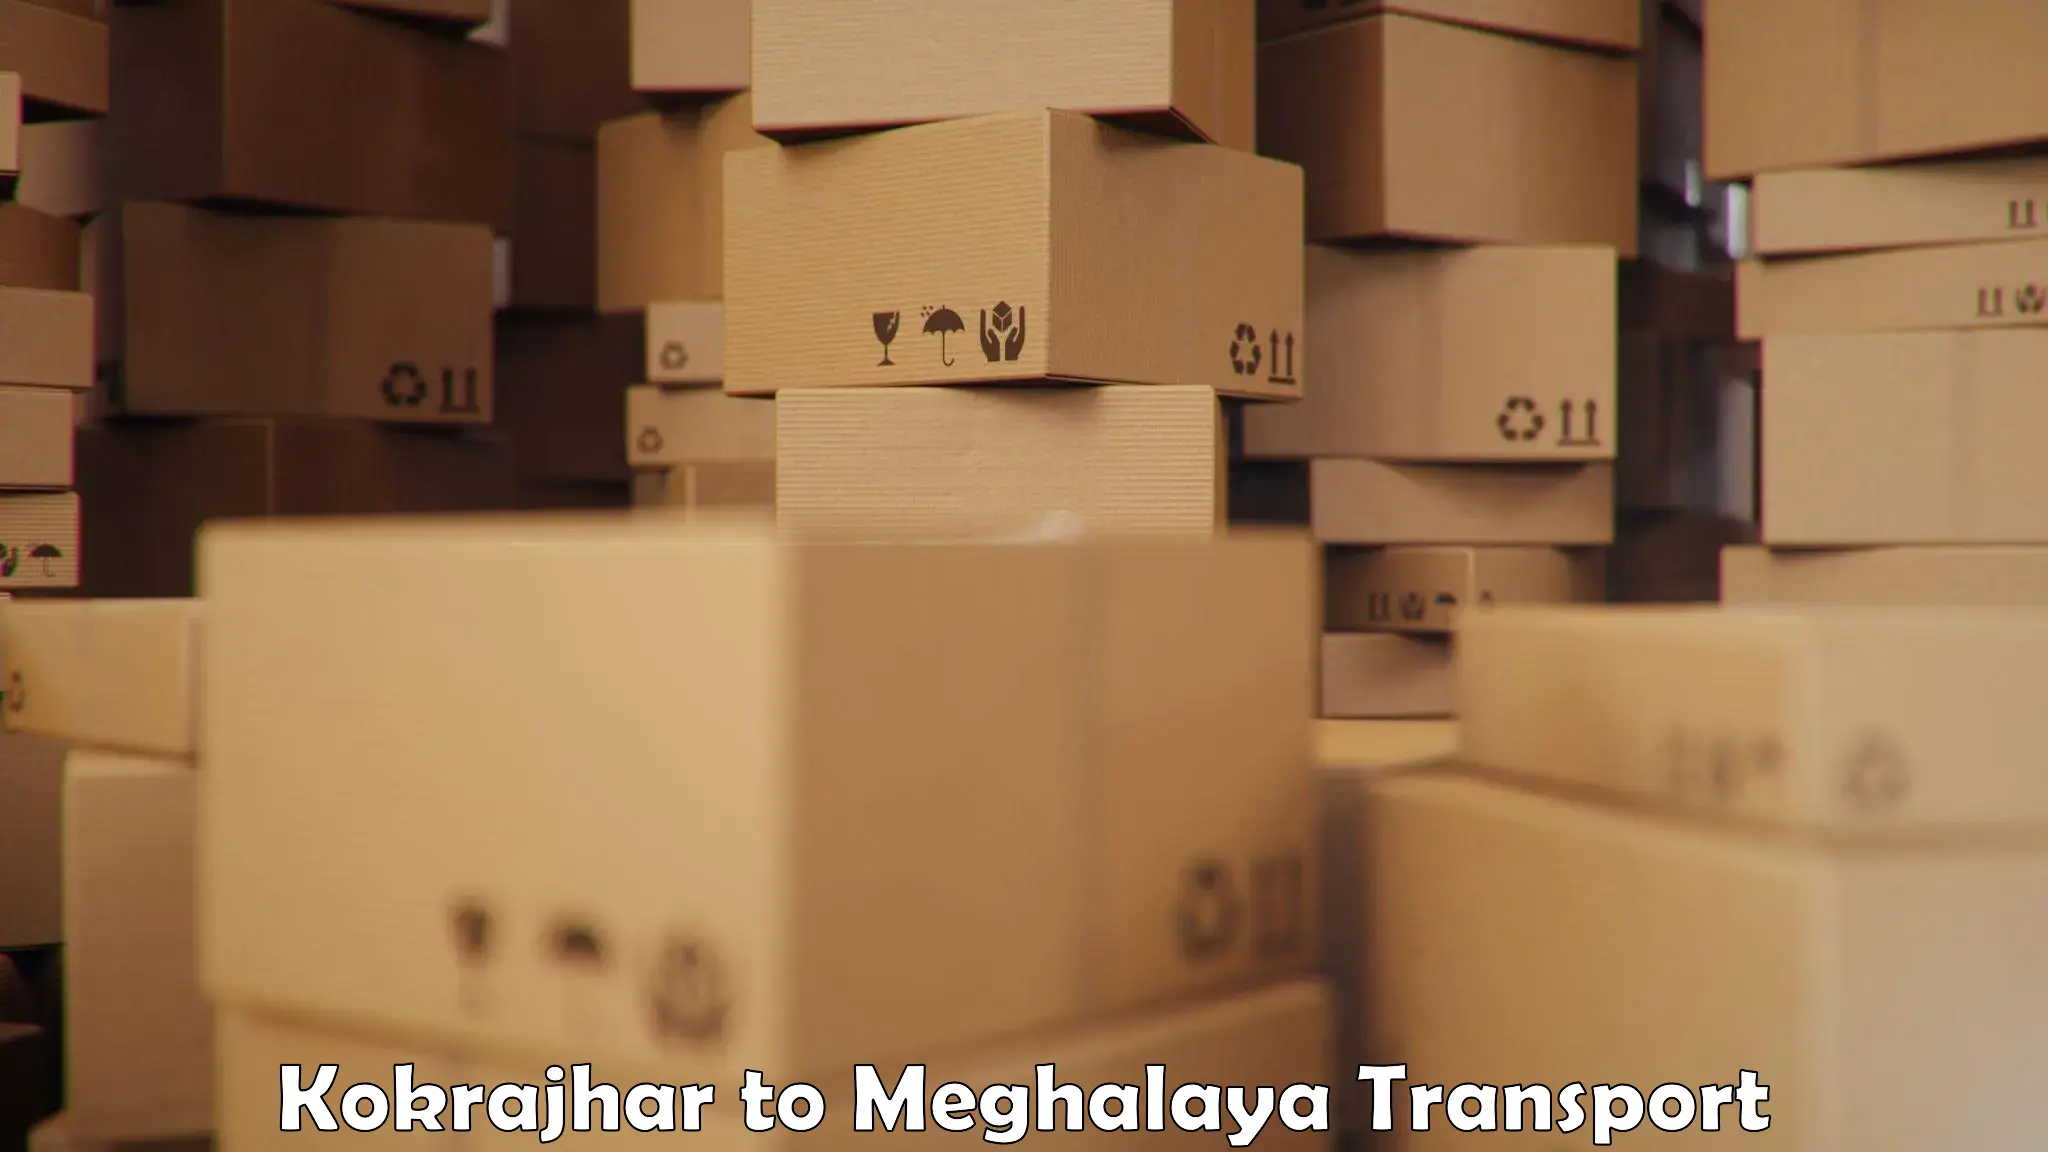 Pick up transport service Kokrajhar to Meghalaya